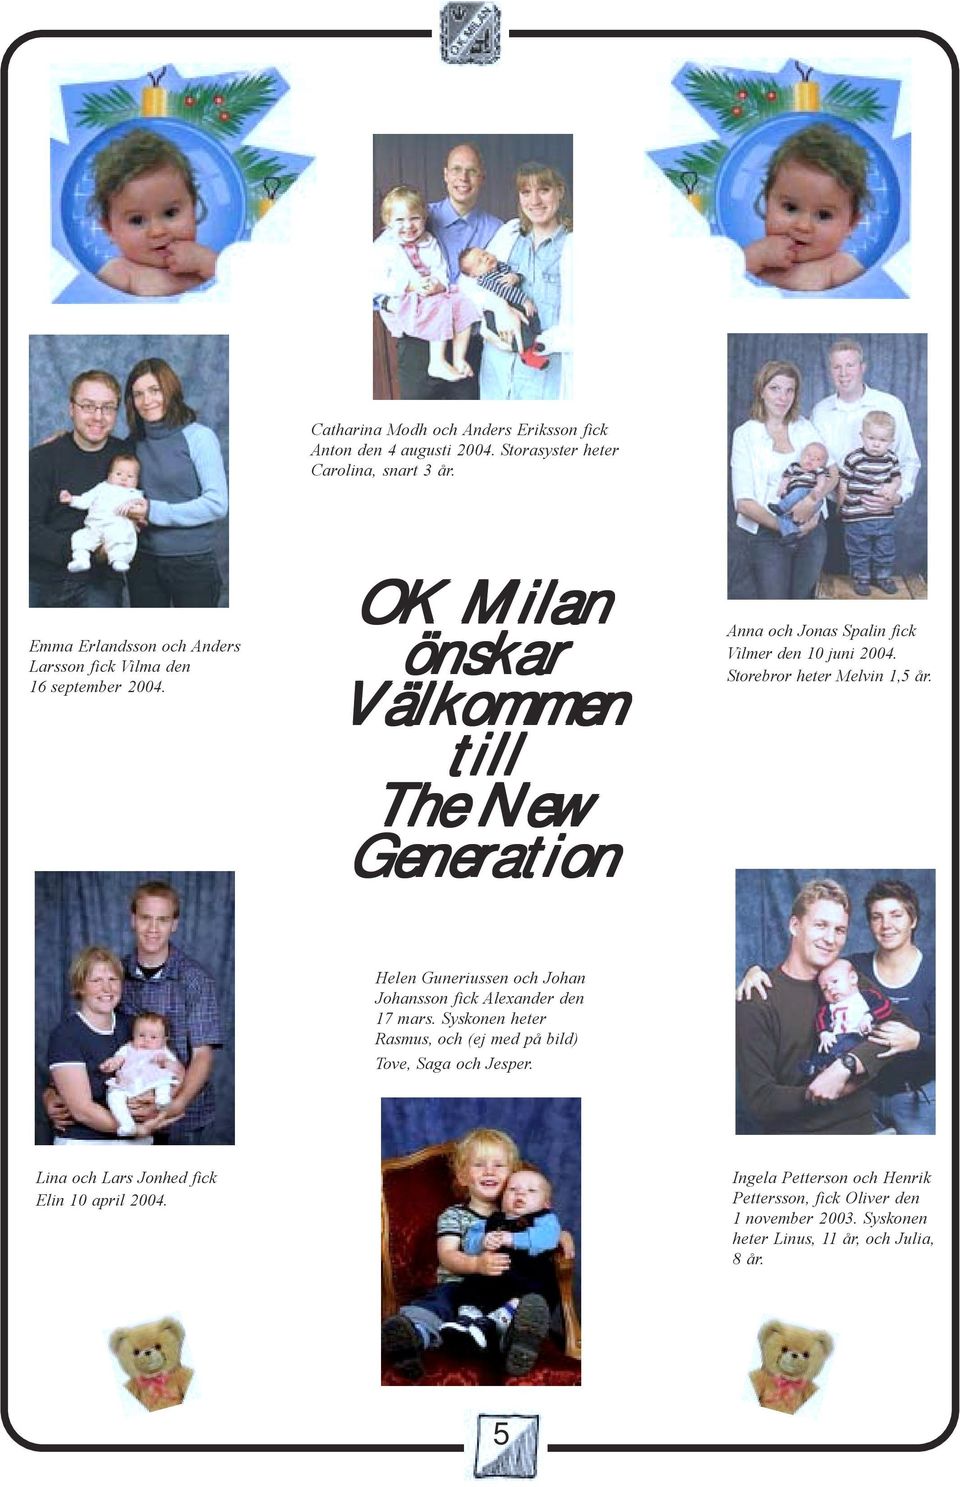 OK Milan önskar Välkommen till The New Generation Anna och Jonas Spalin fick Vilmer den 10 juni 2004. Storebror heter Melvin 1,5 år.